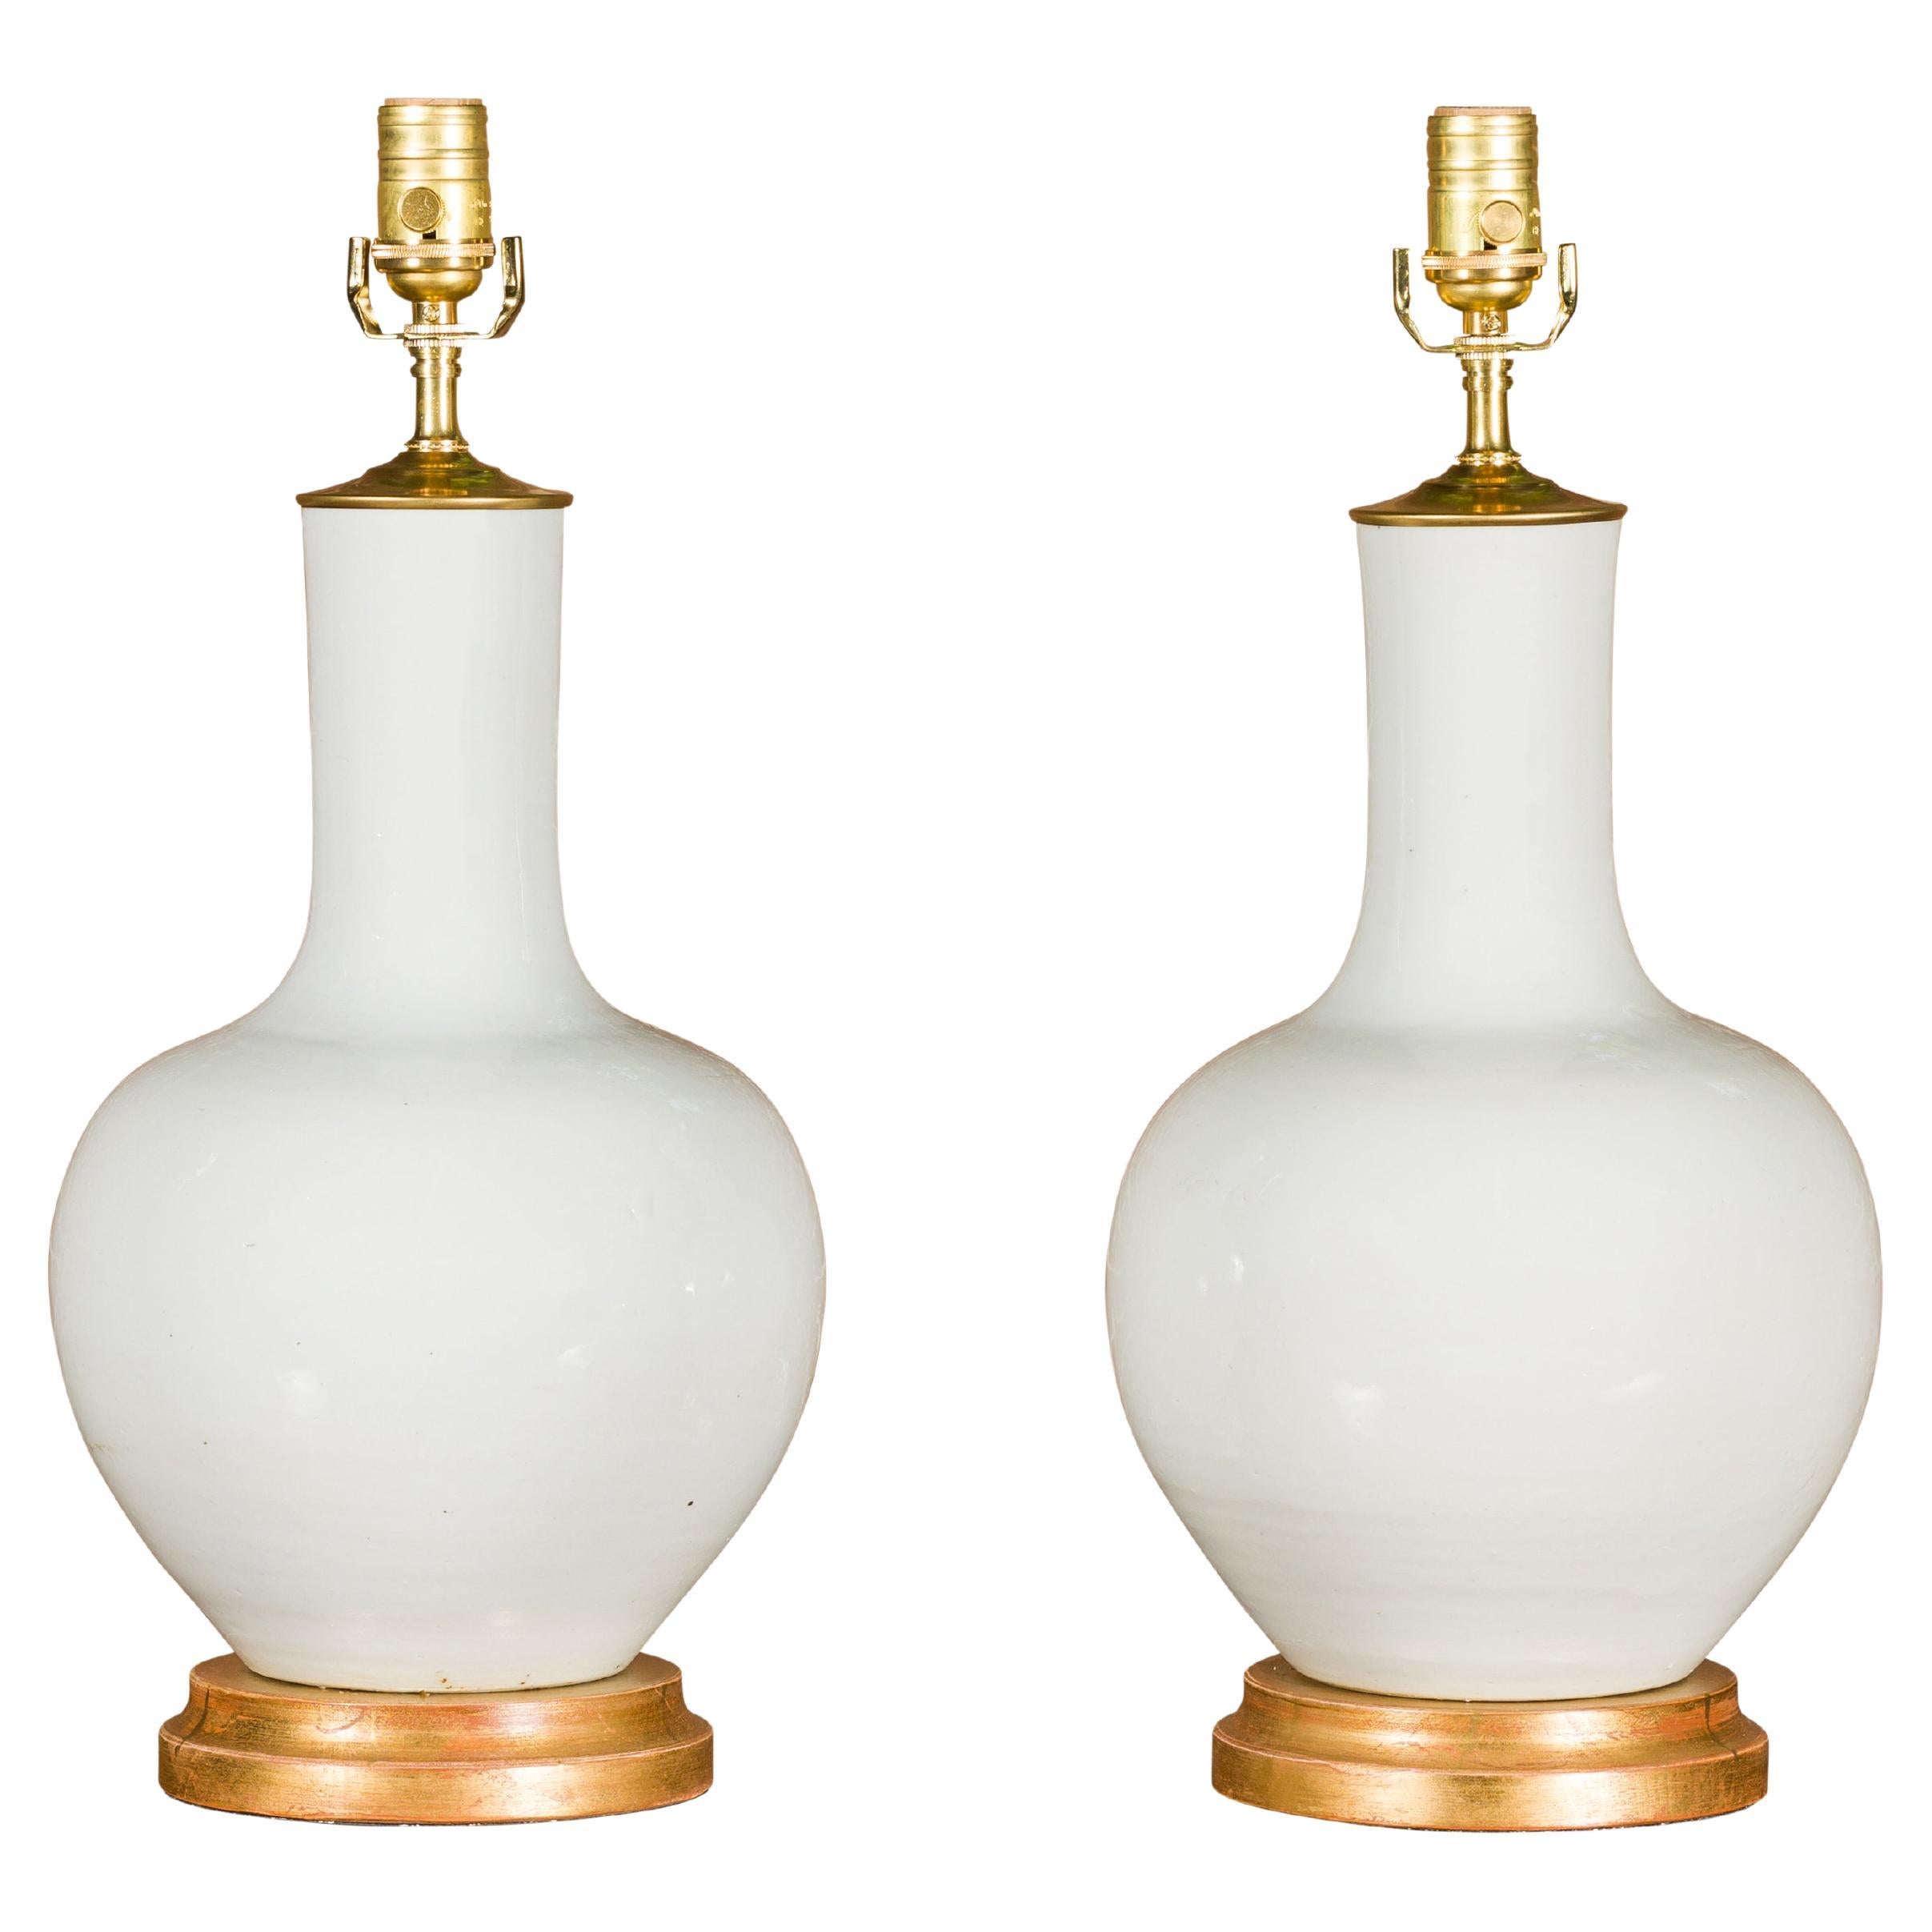 Paire de vases en porcelaine blanche transformés en lampes de table câblées sur bases en bois doré